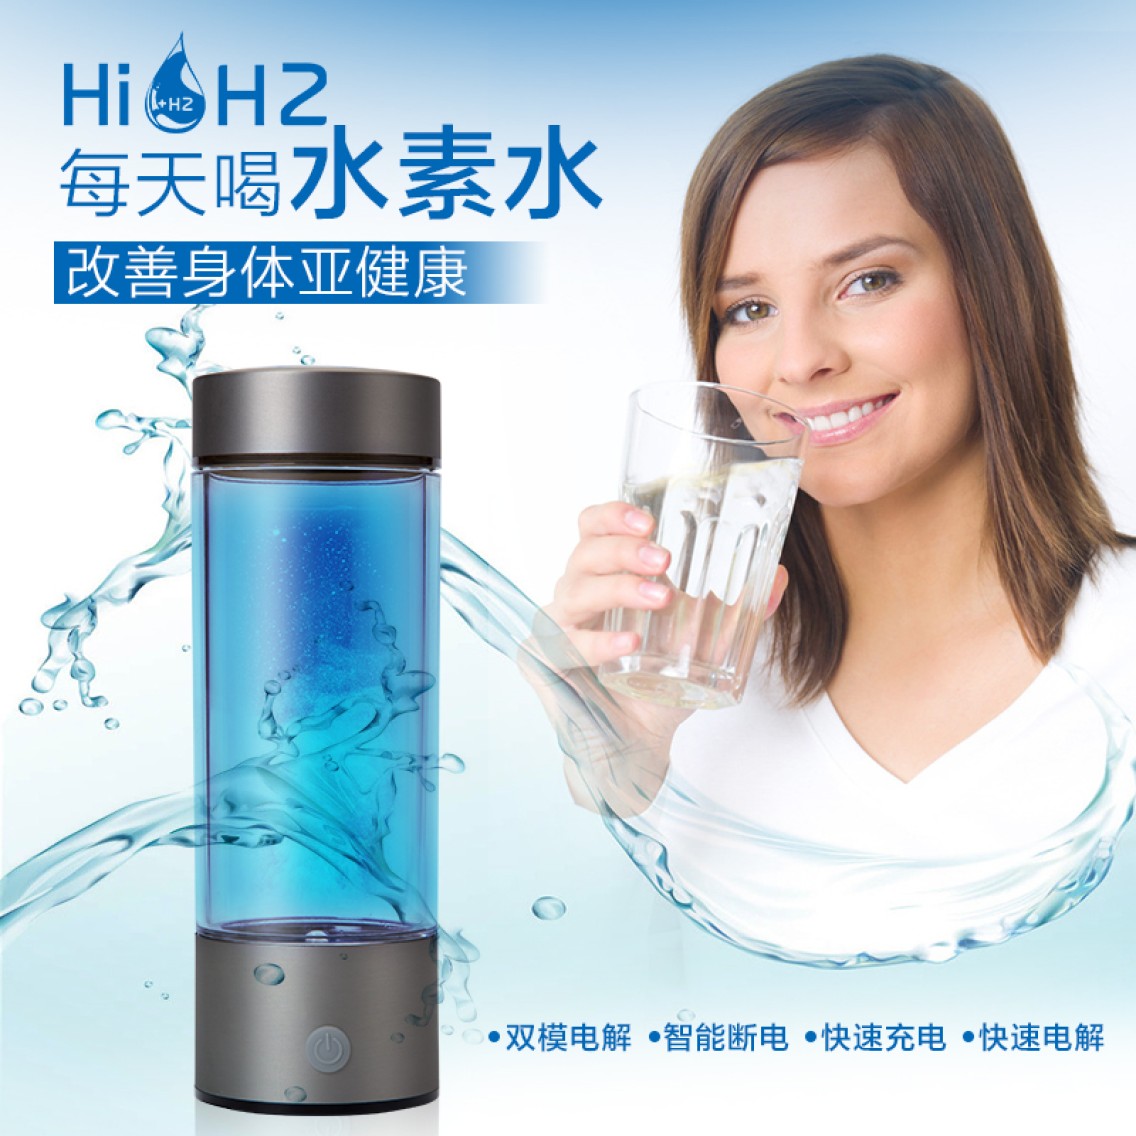 HiH2简约富氢水杯批发